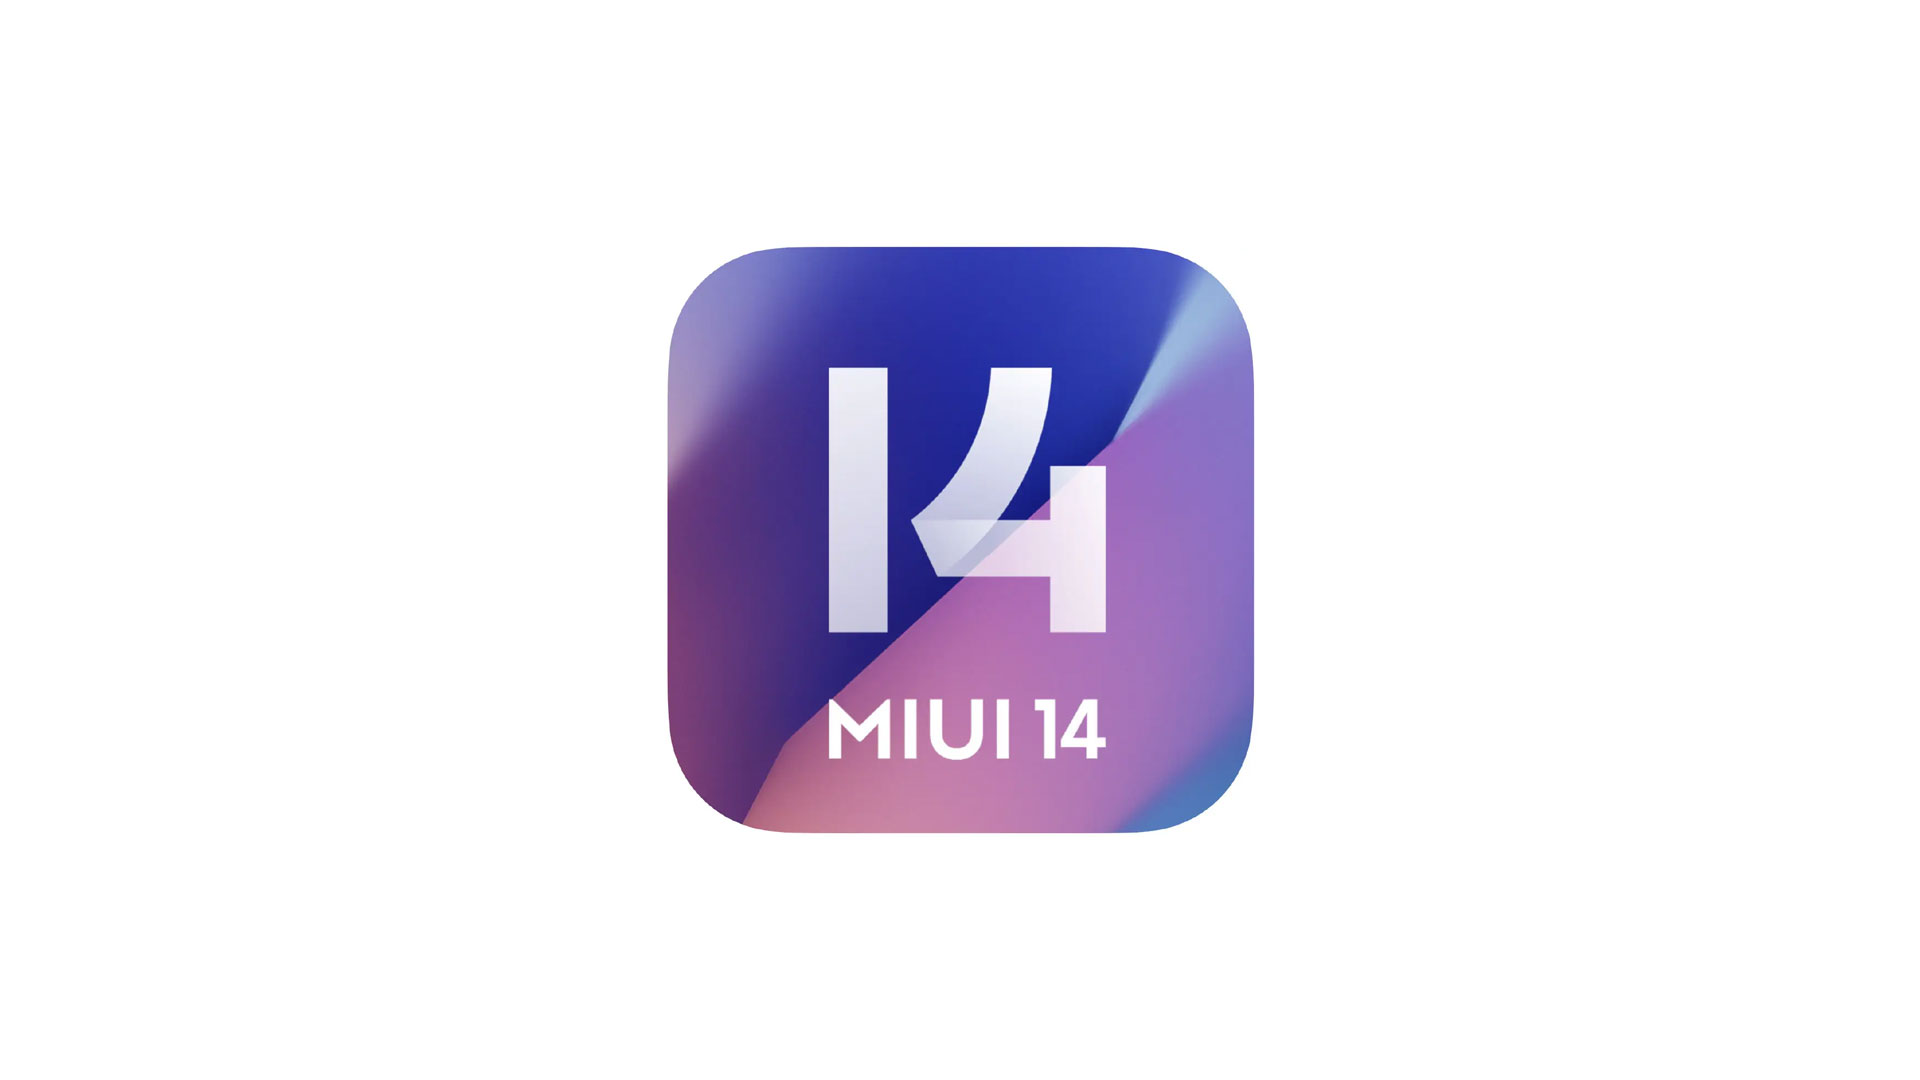 14 андроид miui. Миуй 14. Xiaomi MIUI 14. MIUI логотип. "MIUI 14" батареи.